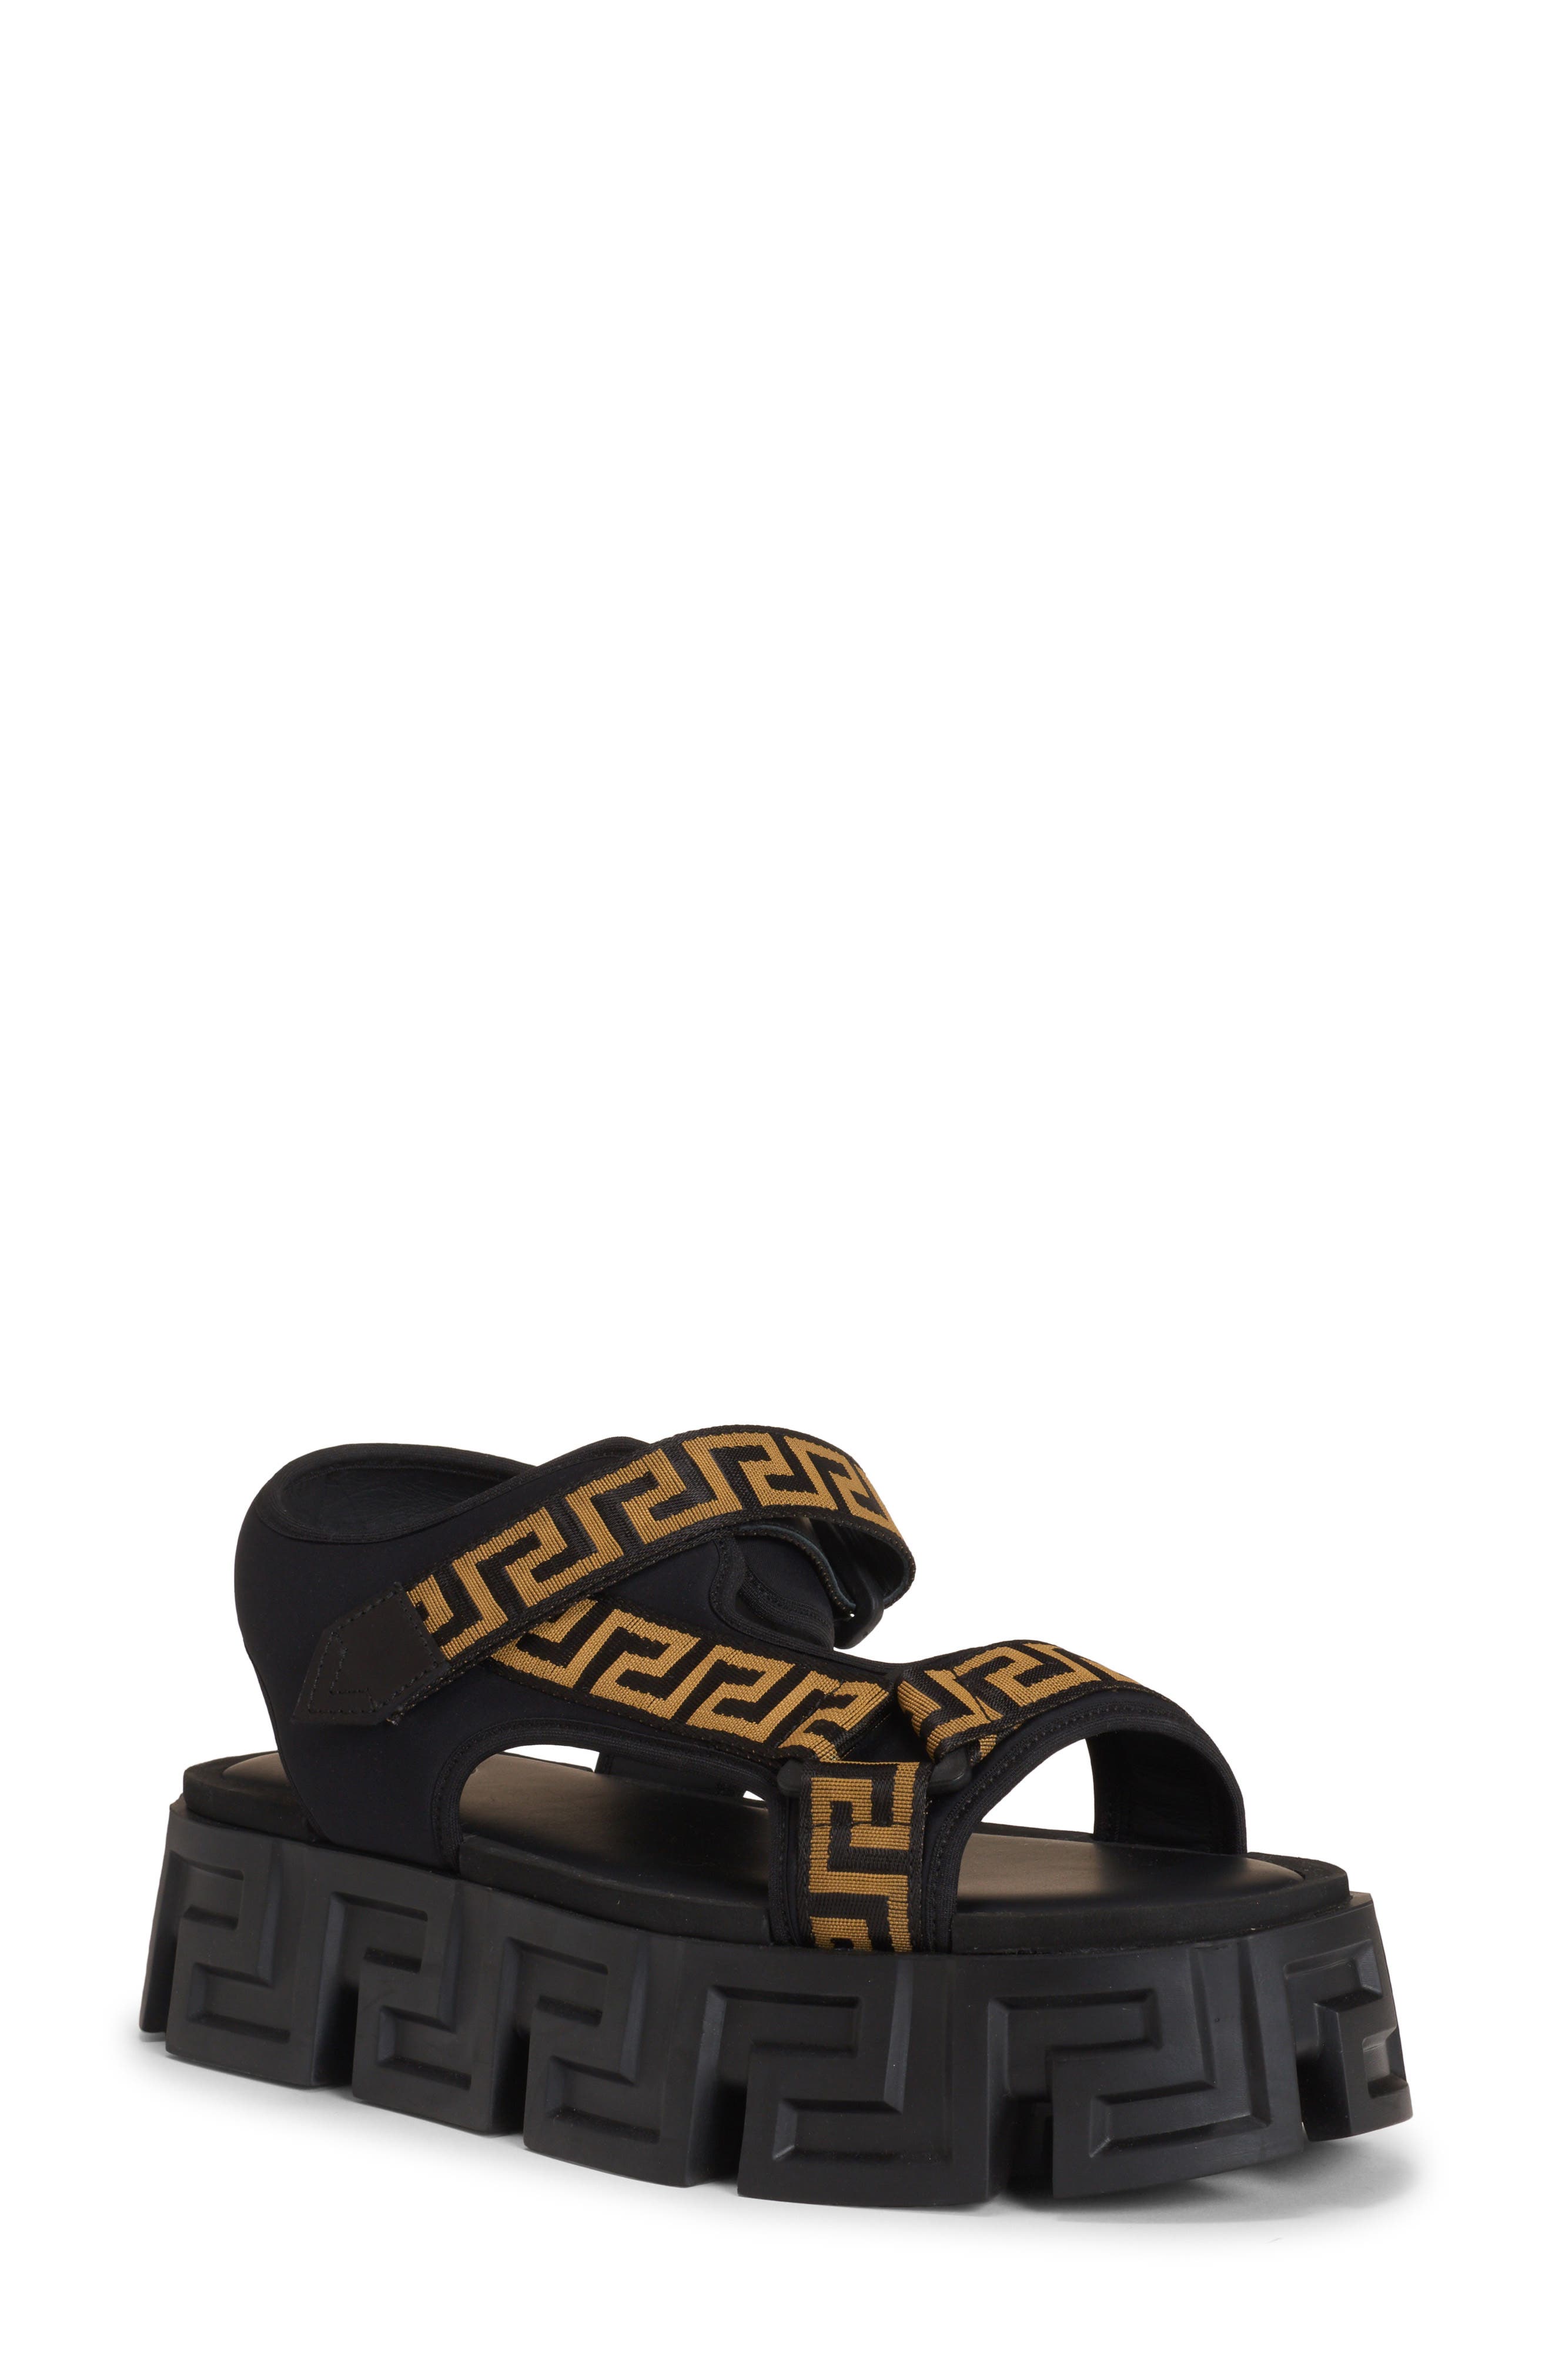 Versace Greca Sole Platform Sandal in Black Gold at Nordstrom, Size 8Us